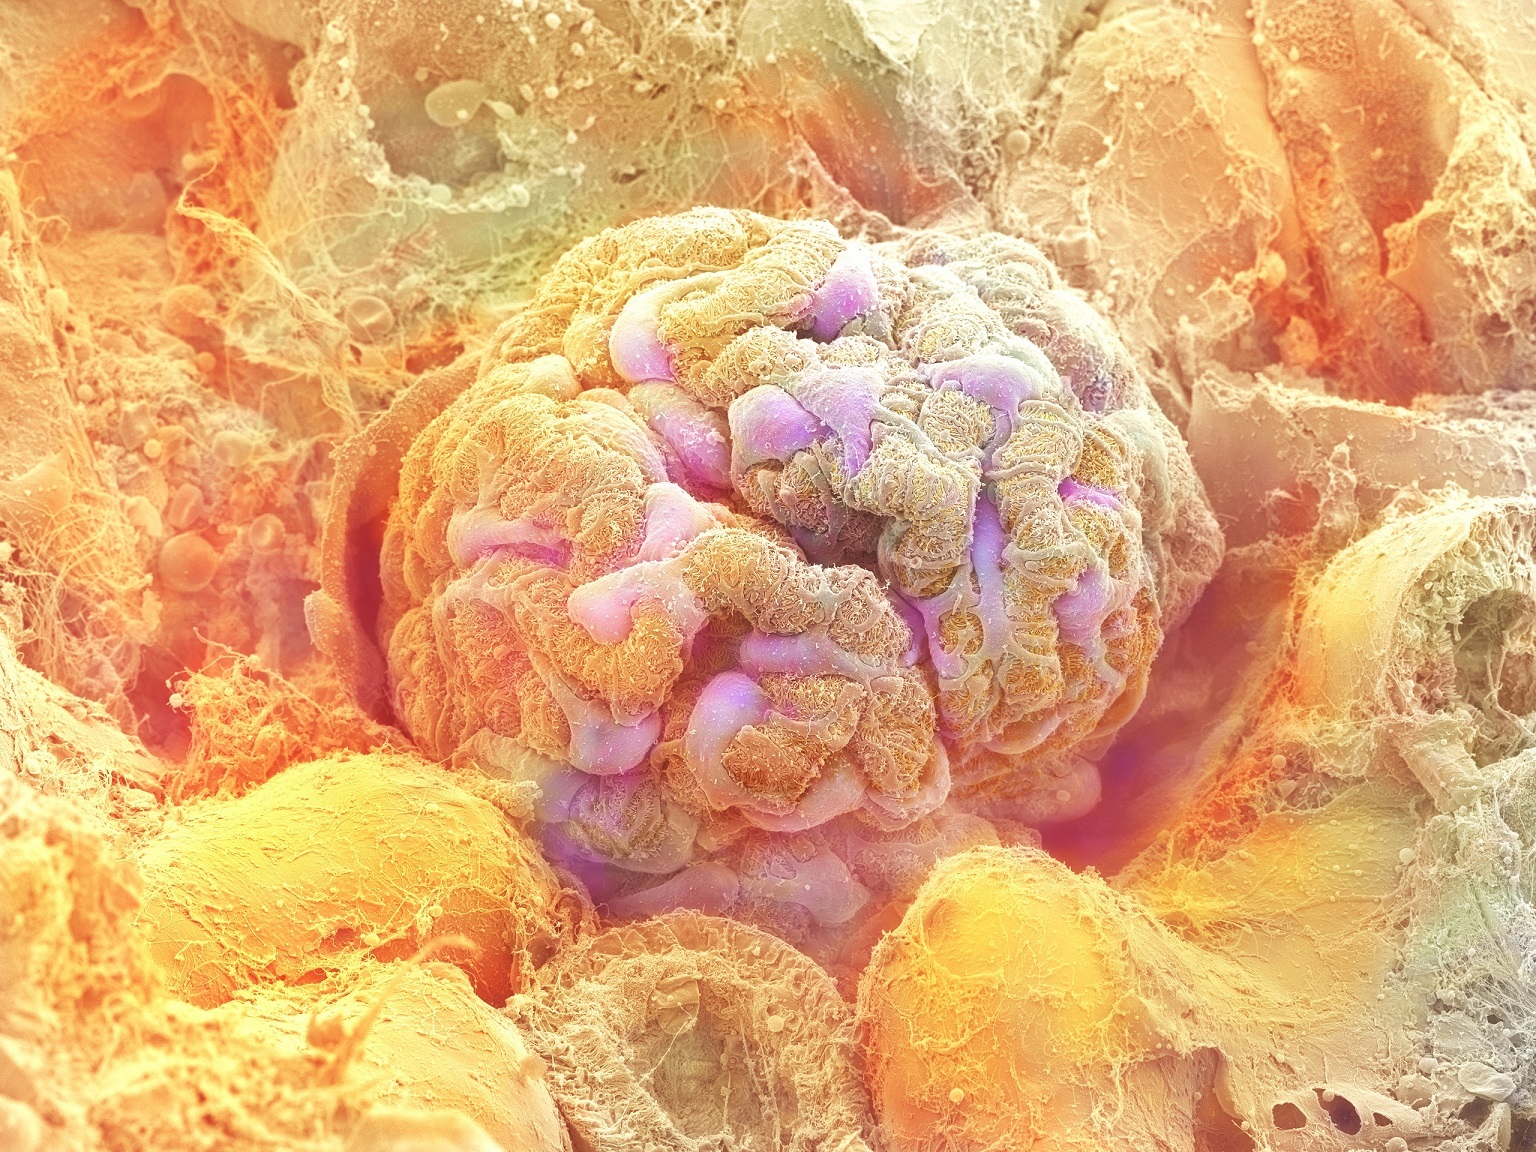 腎臓の糸球体 ©甲賀大輔・旭川医科大学/ 日立ハイテクノロジーズ/NHK